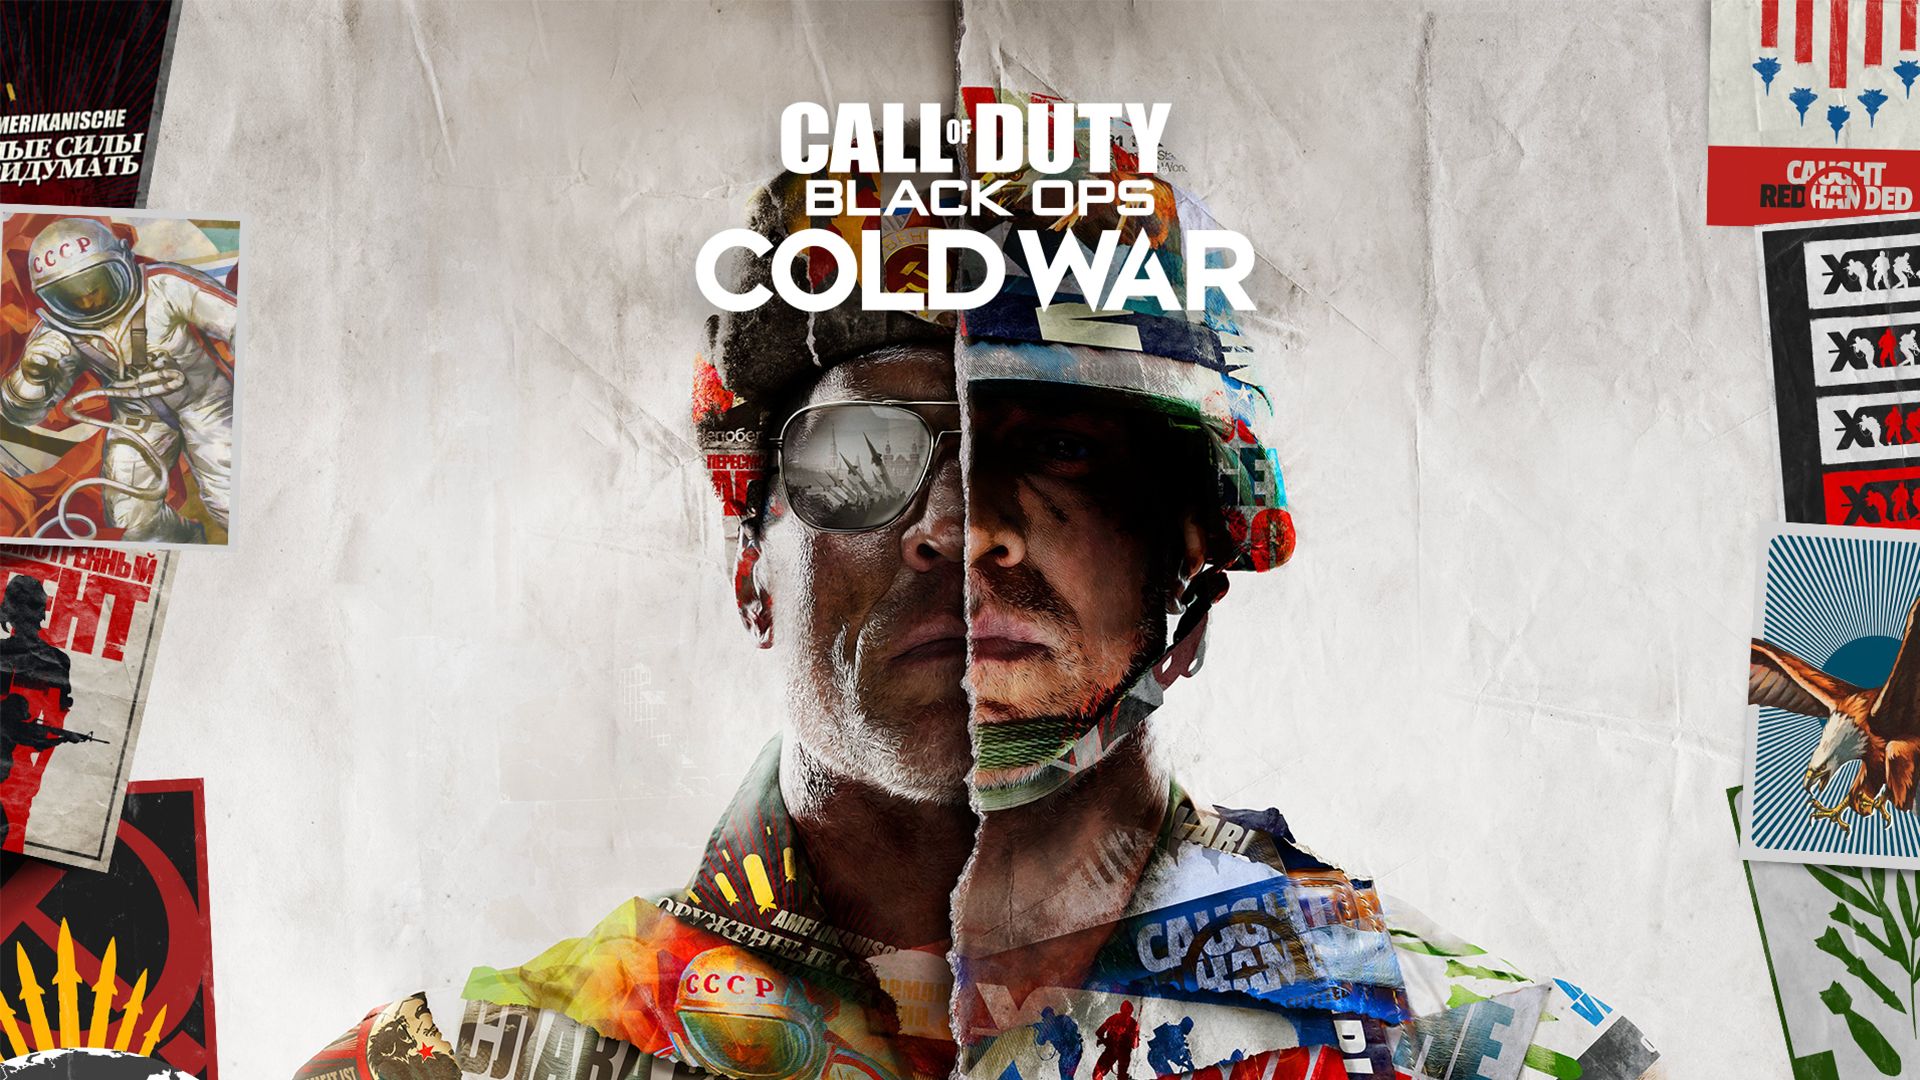 Melhores papéis de parede de Call Of Duty: Black Ops Cold War para tela do telefone